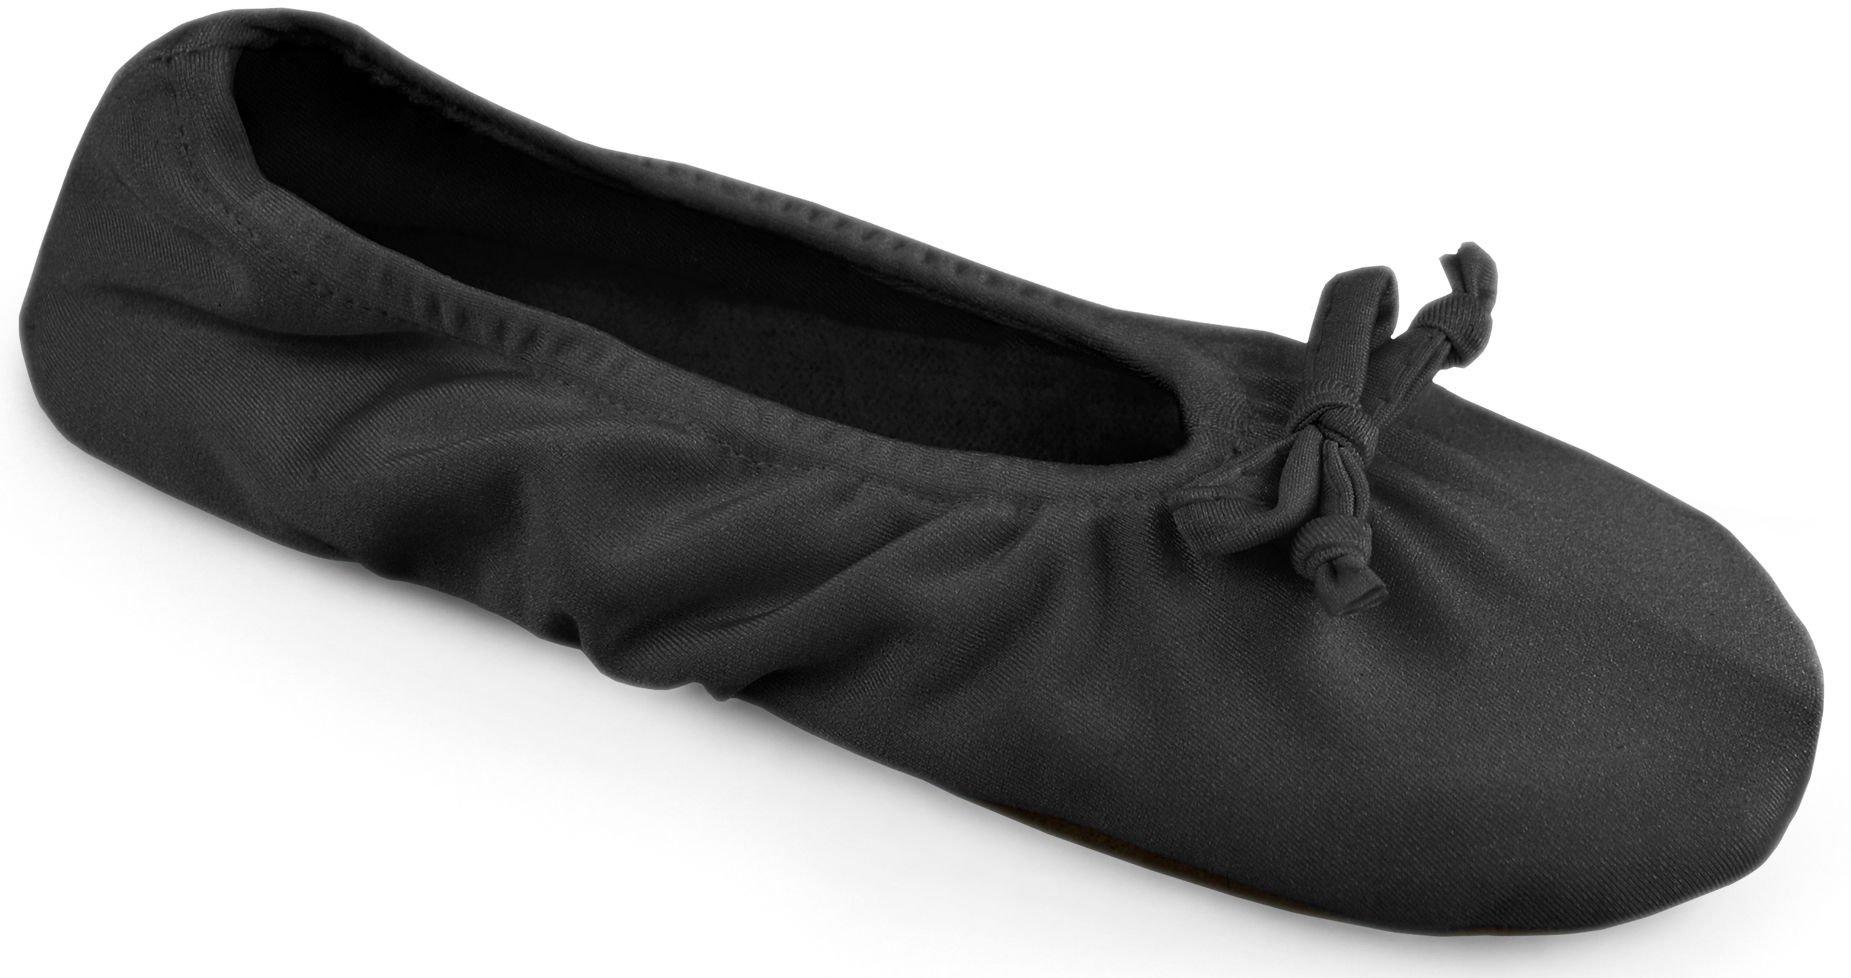 dearfoam satin ballet slippers